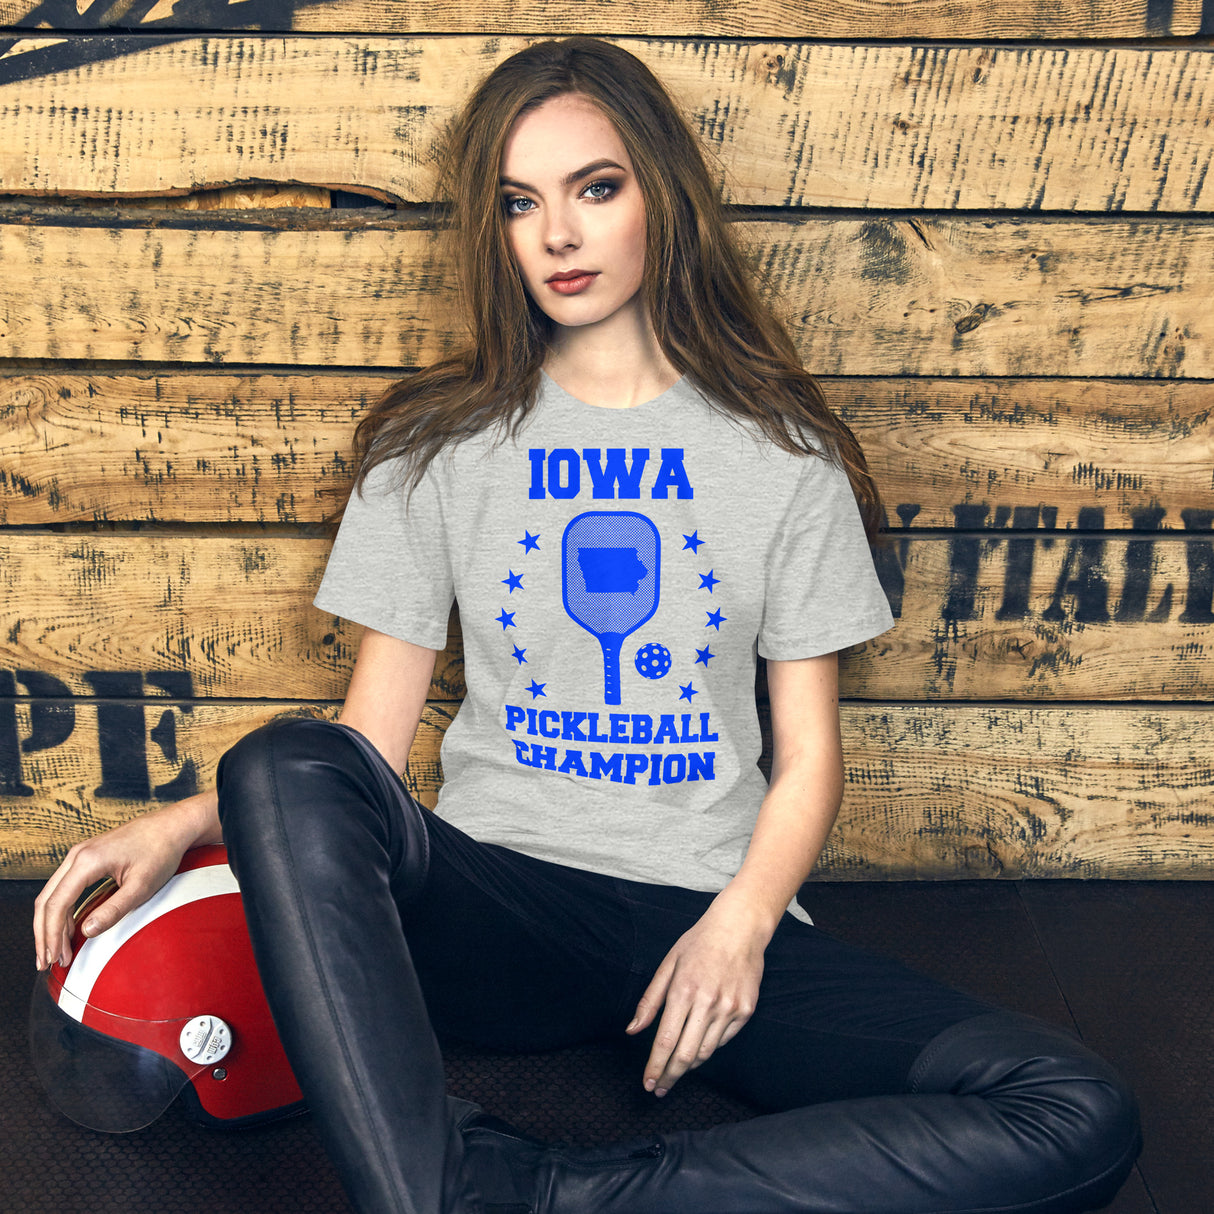 Iowa Pickleball Champion Women's Shirt